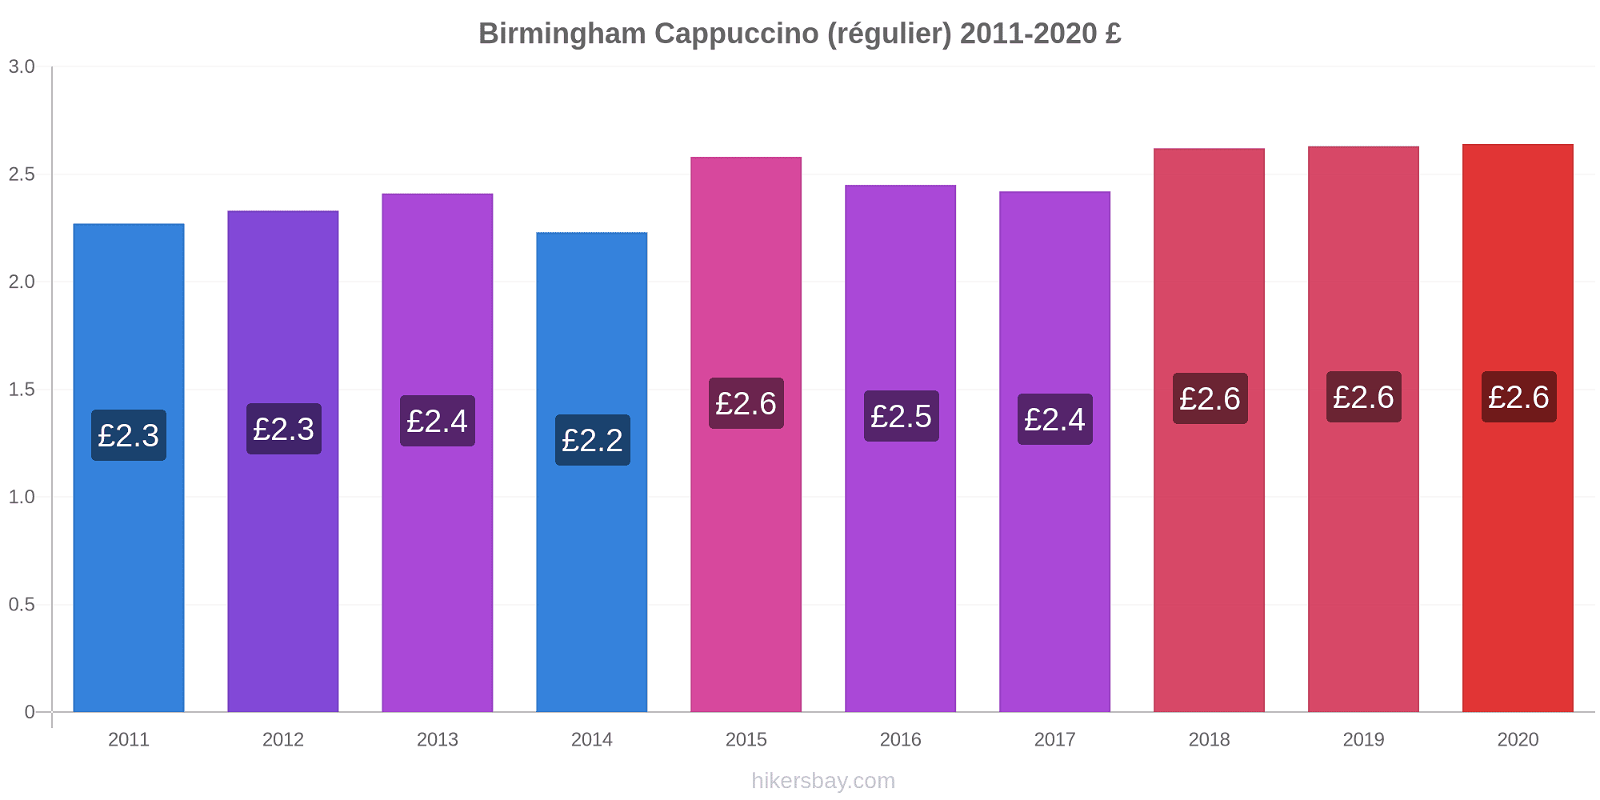 Birmingham changements de prix Cappuccino (régulier) hikersbay.com